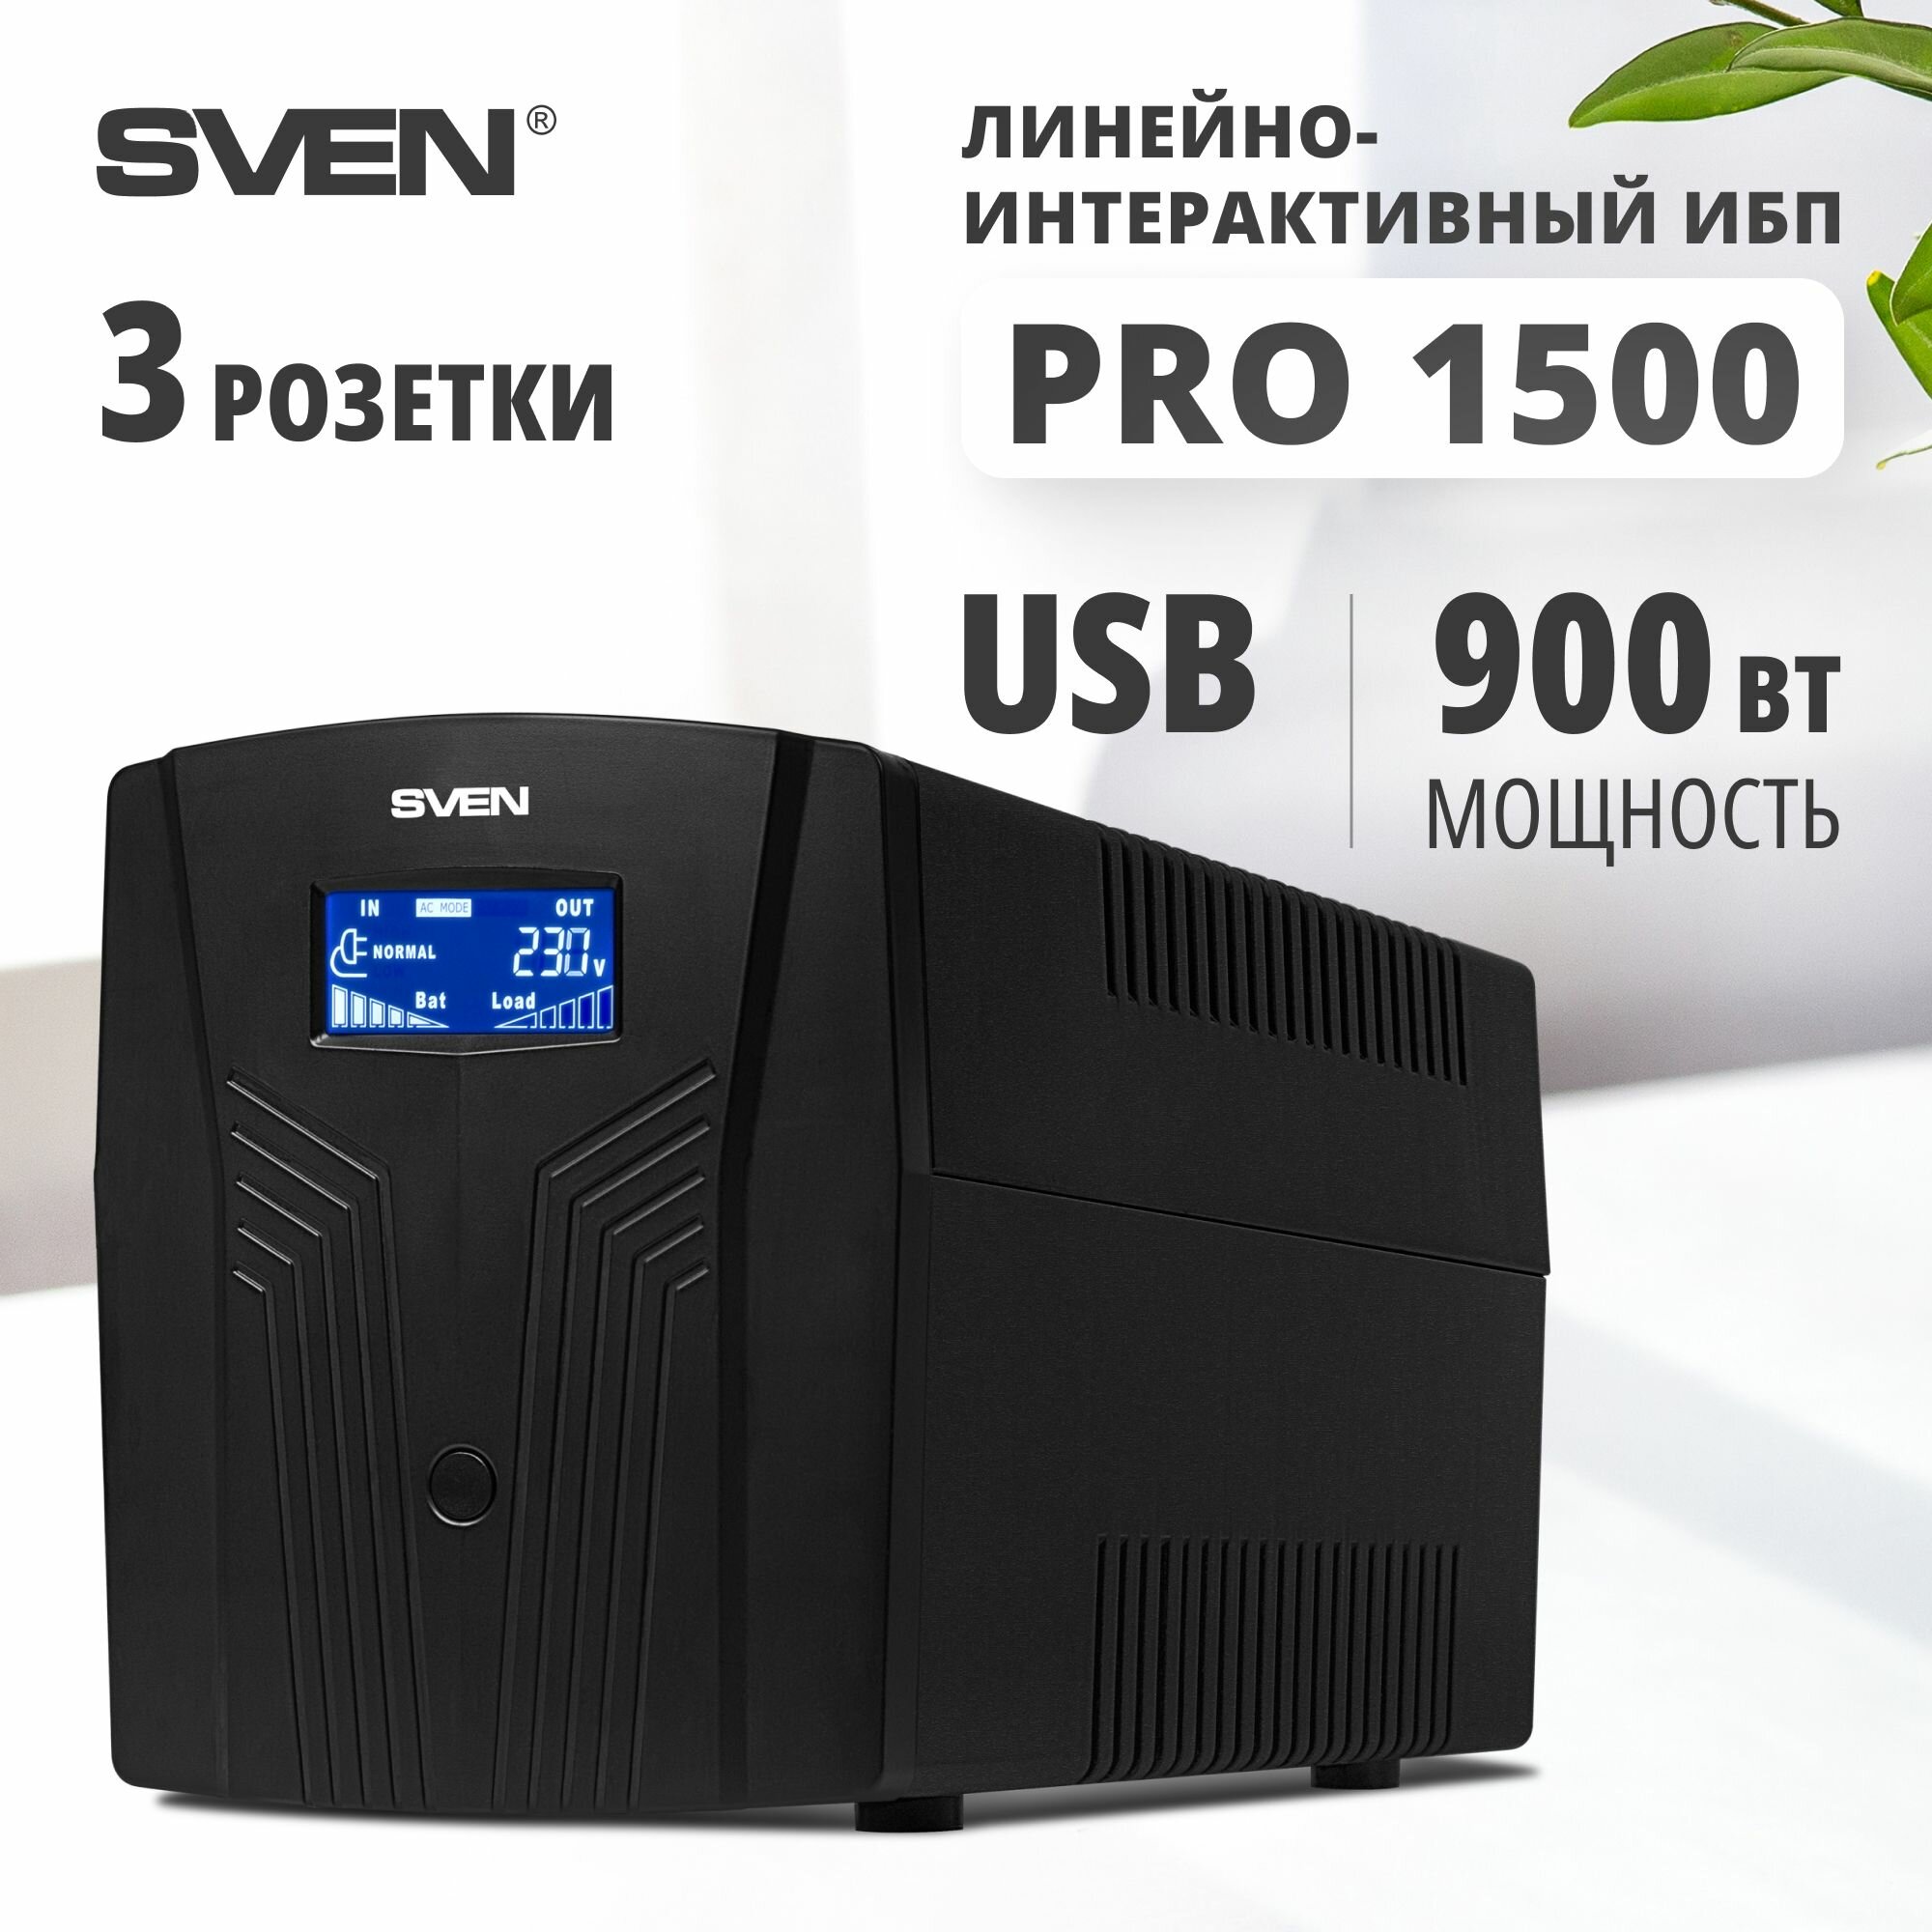 Интерактивный ИБП SVEN Pro 1500 (LCD, USB) черный 900 Вт